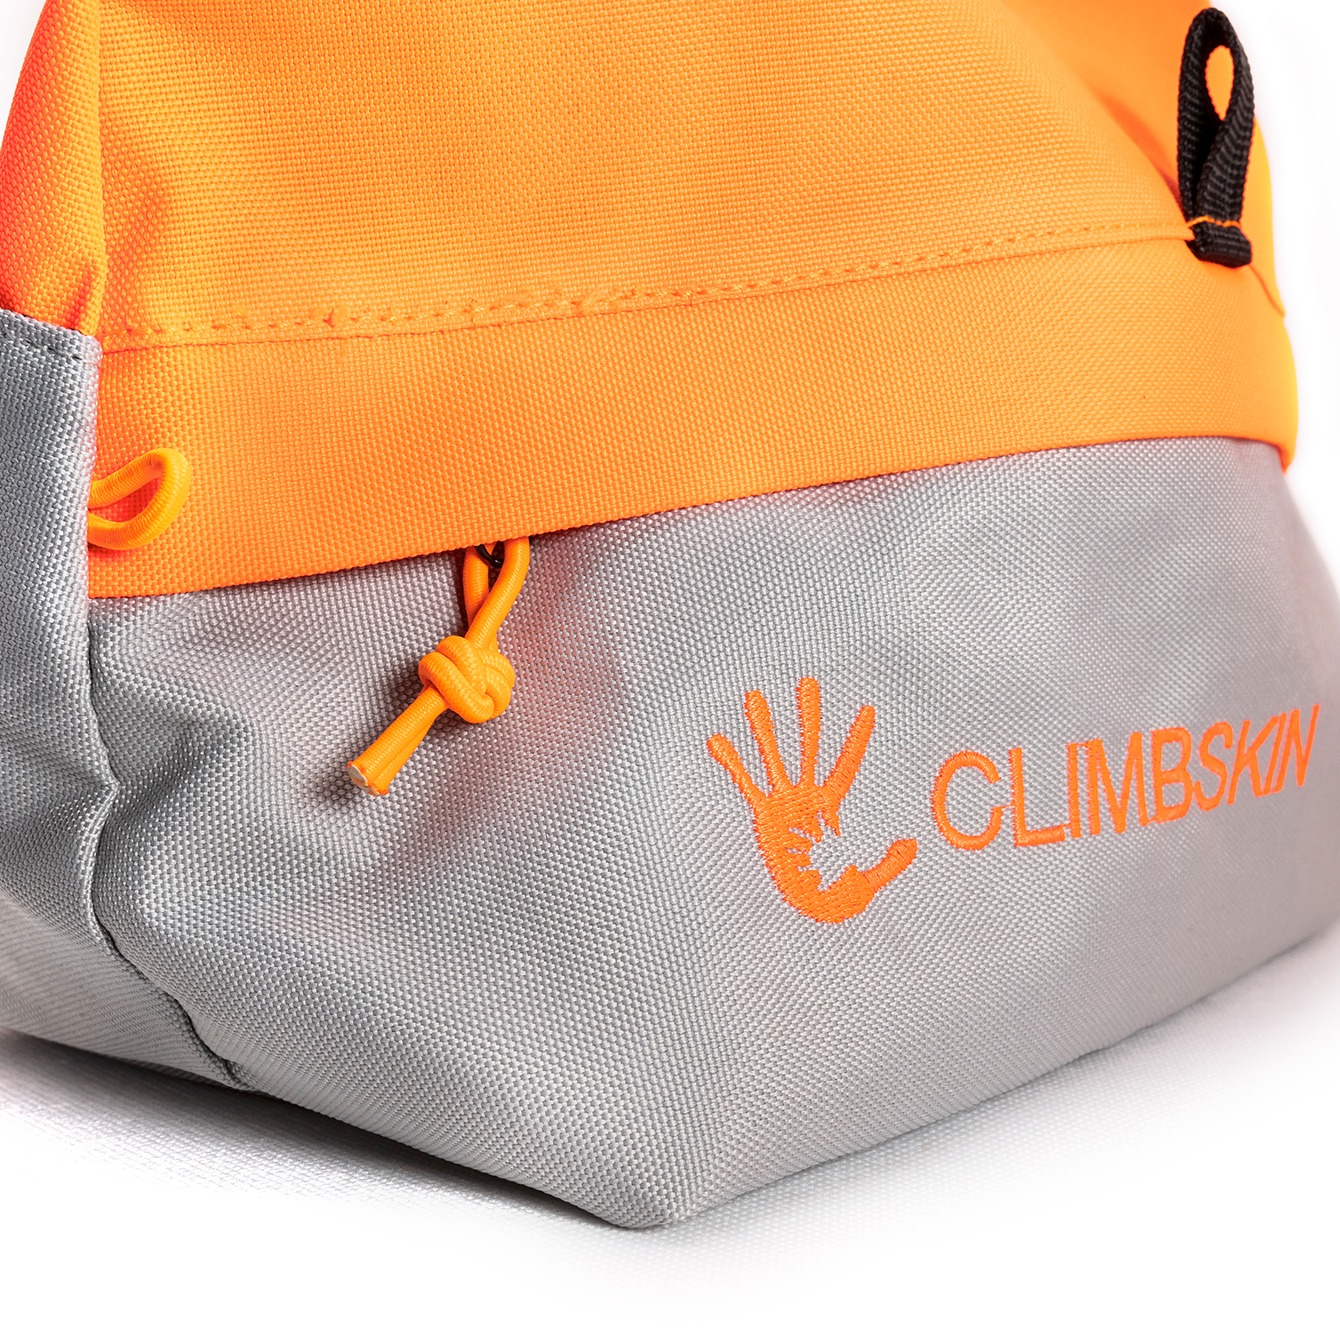 Climbskin Chalk bag